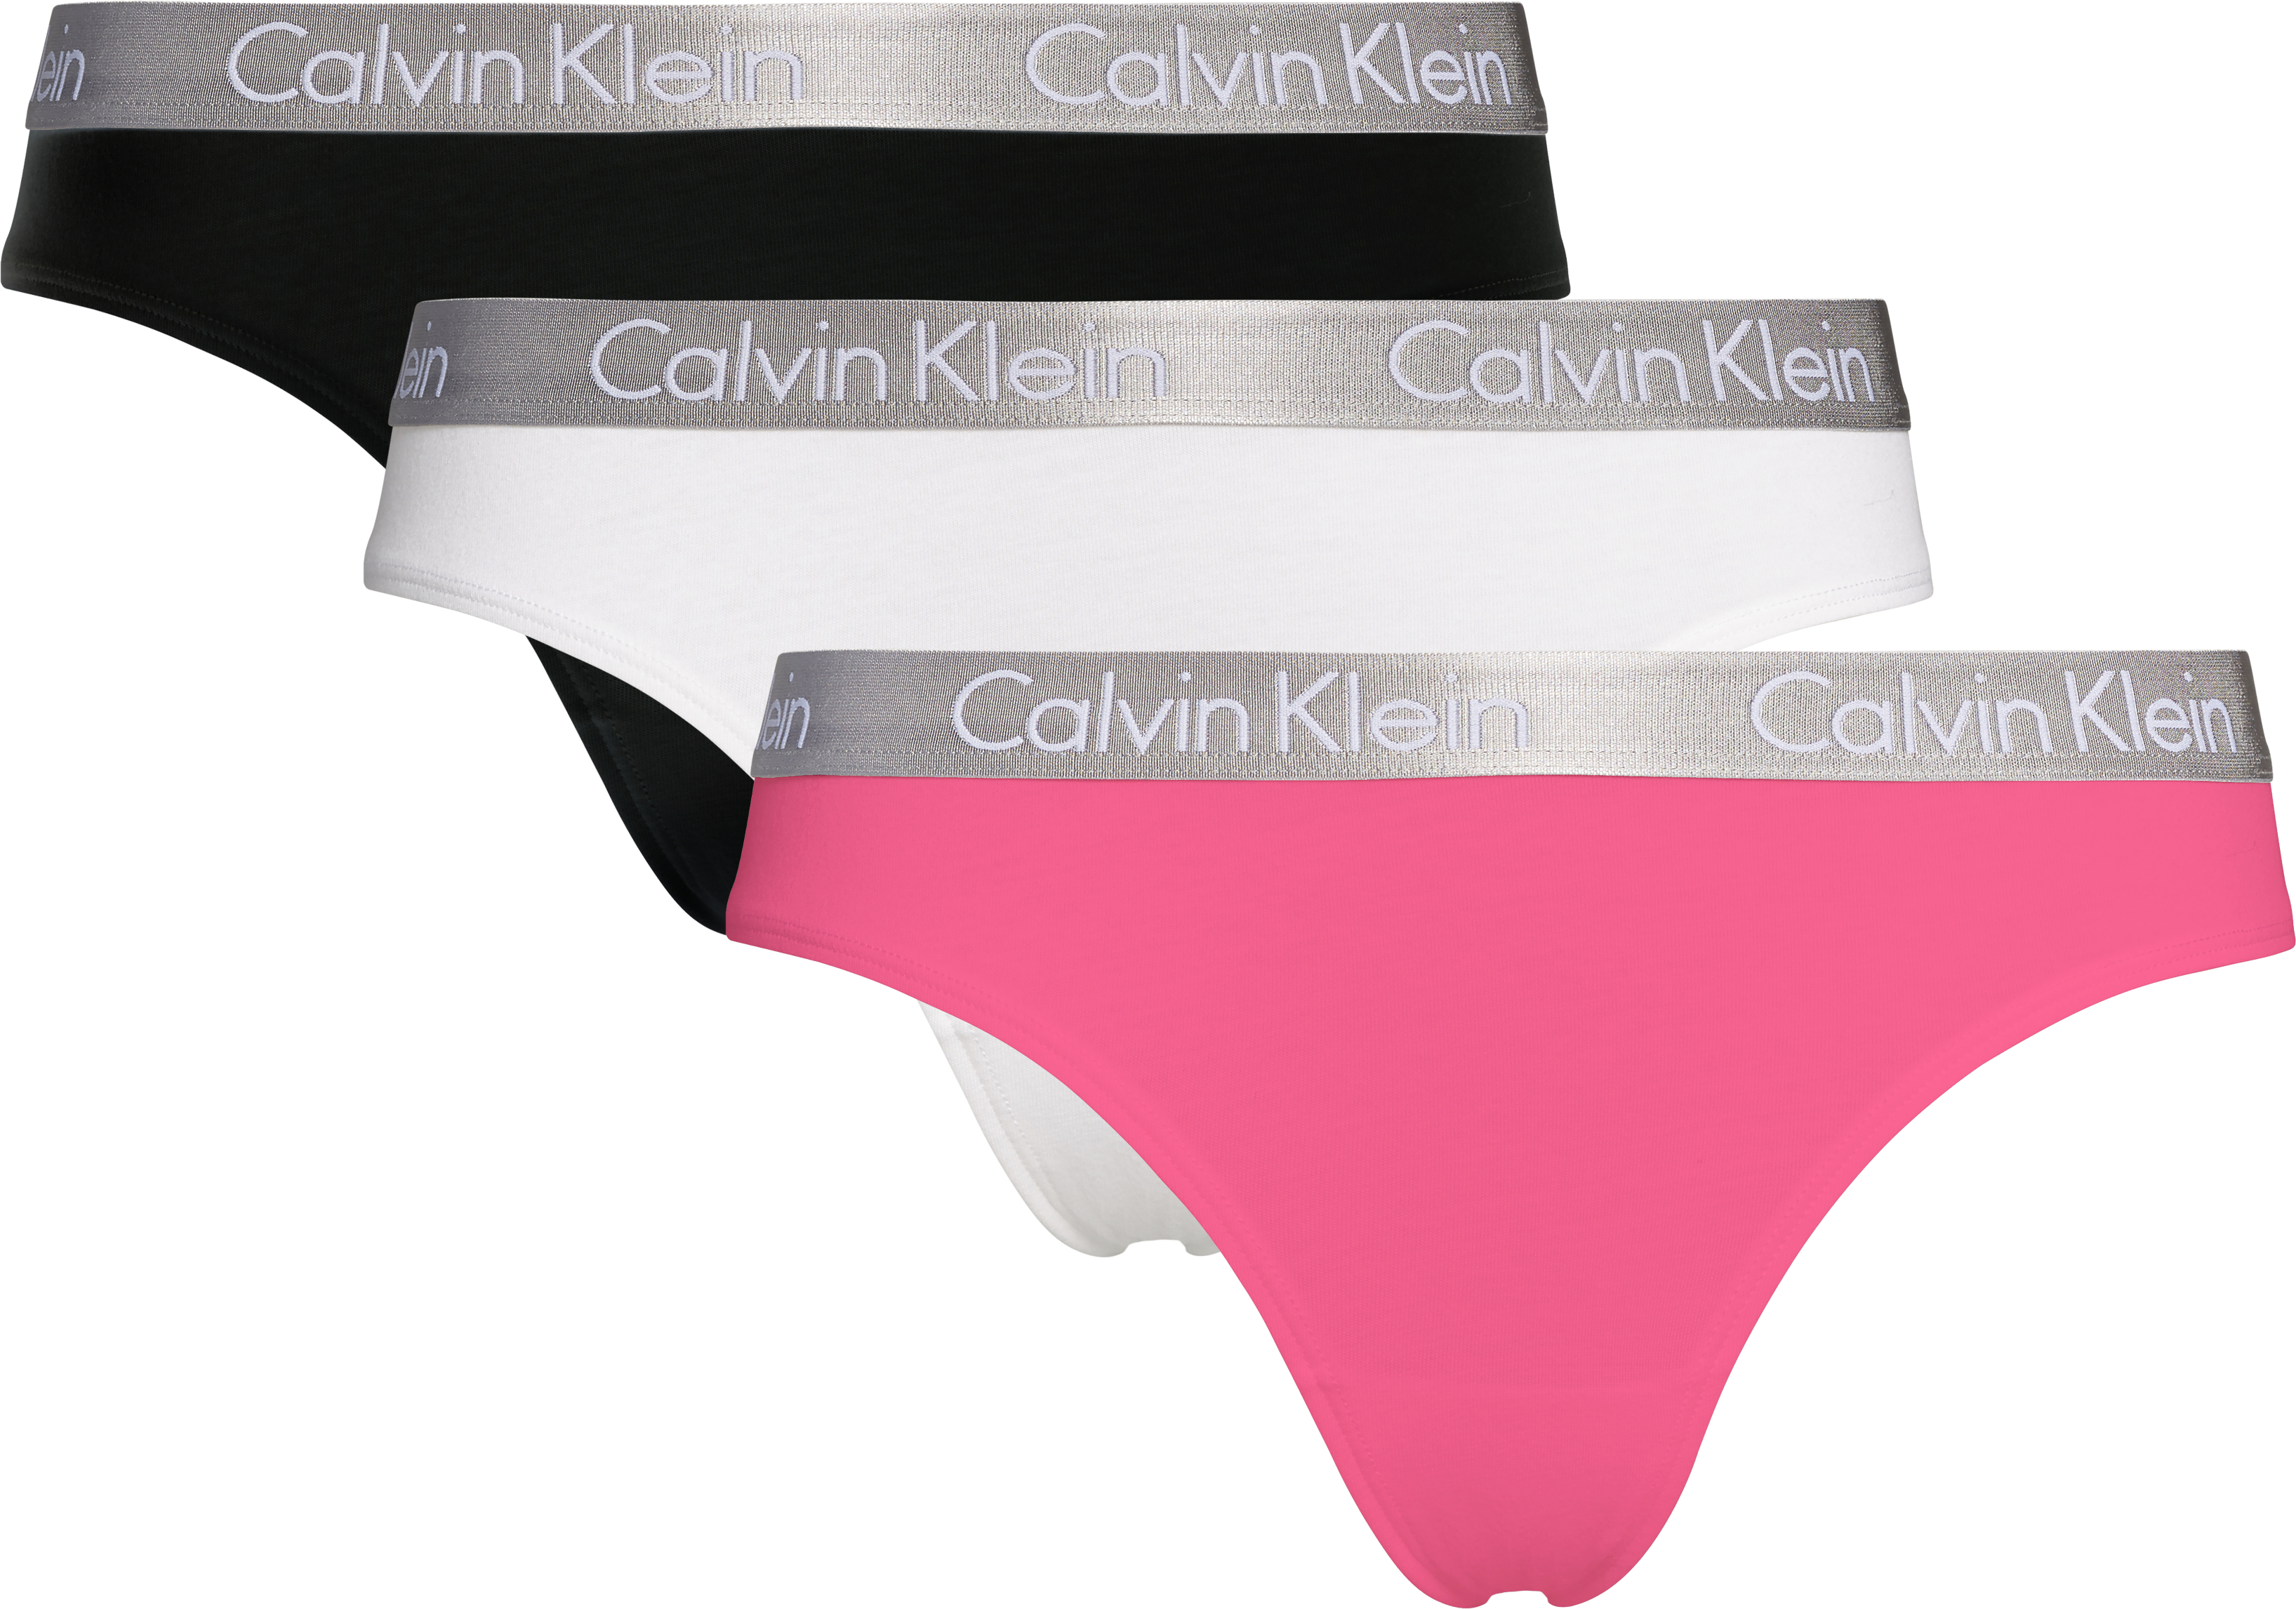 Calvin Klein - Thong 3pack Black/white/pink